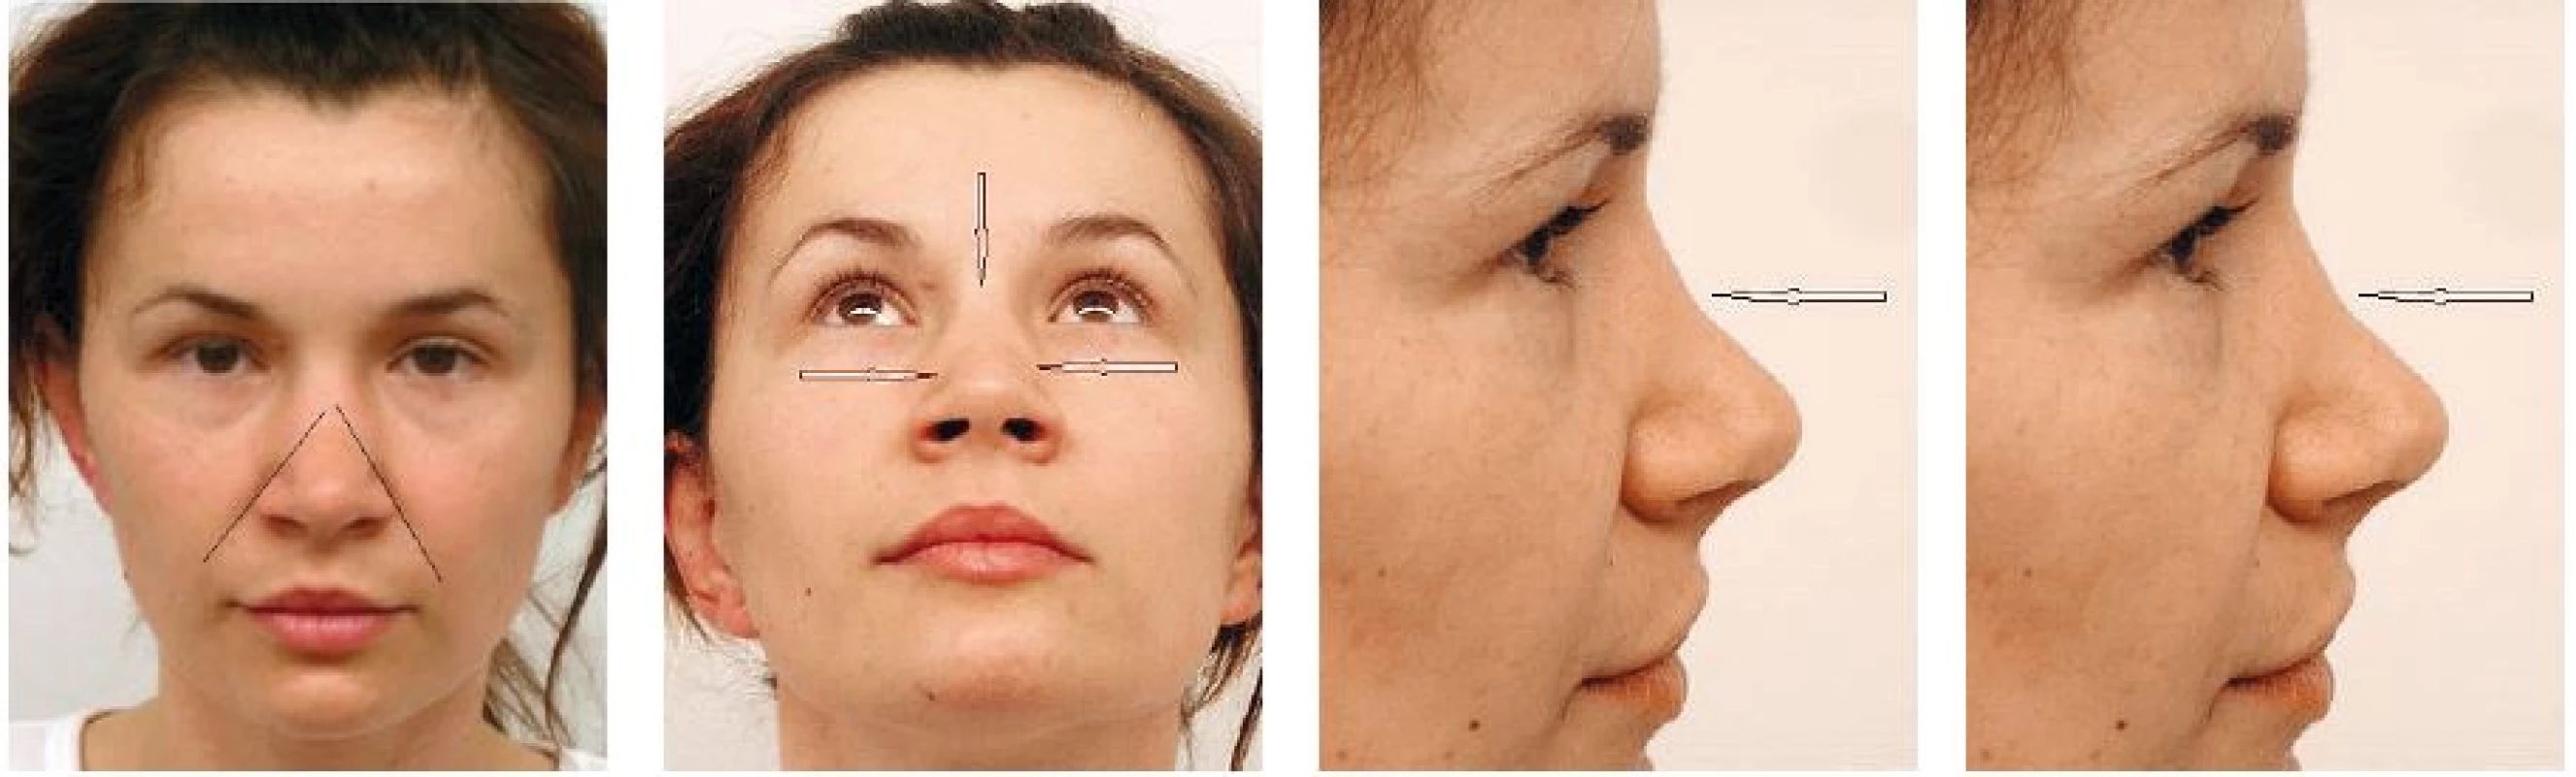 Deformita nosa v tvare obráteného písmena „V“. Pacientka niekoľko rokov po rinoplastike, vľavo čiarou je naznačené pokračovanie nazolabiálnej ryhy smerom na dorzum nosa. Na ďalšej snímke je šípkami vyznačená priehlbina tvoriaca podstatu deformity. Pravé snímky demonštrujú pokles profilovej línie na rozhraní strednej a hornej tretiny nosa.